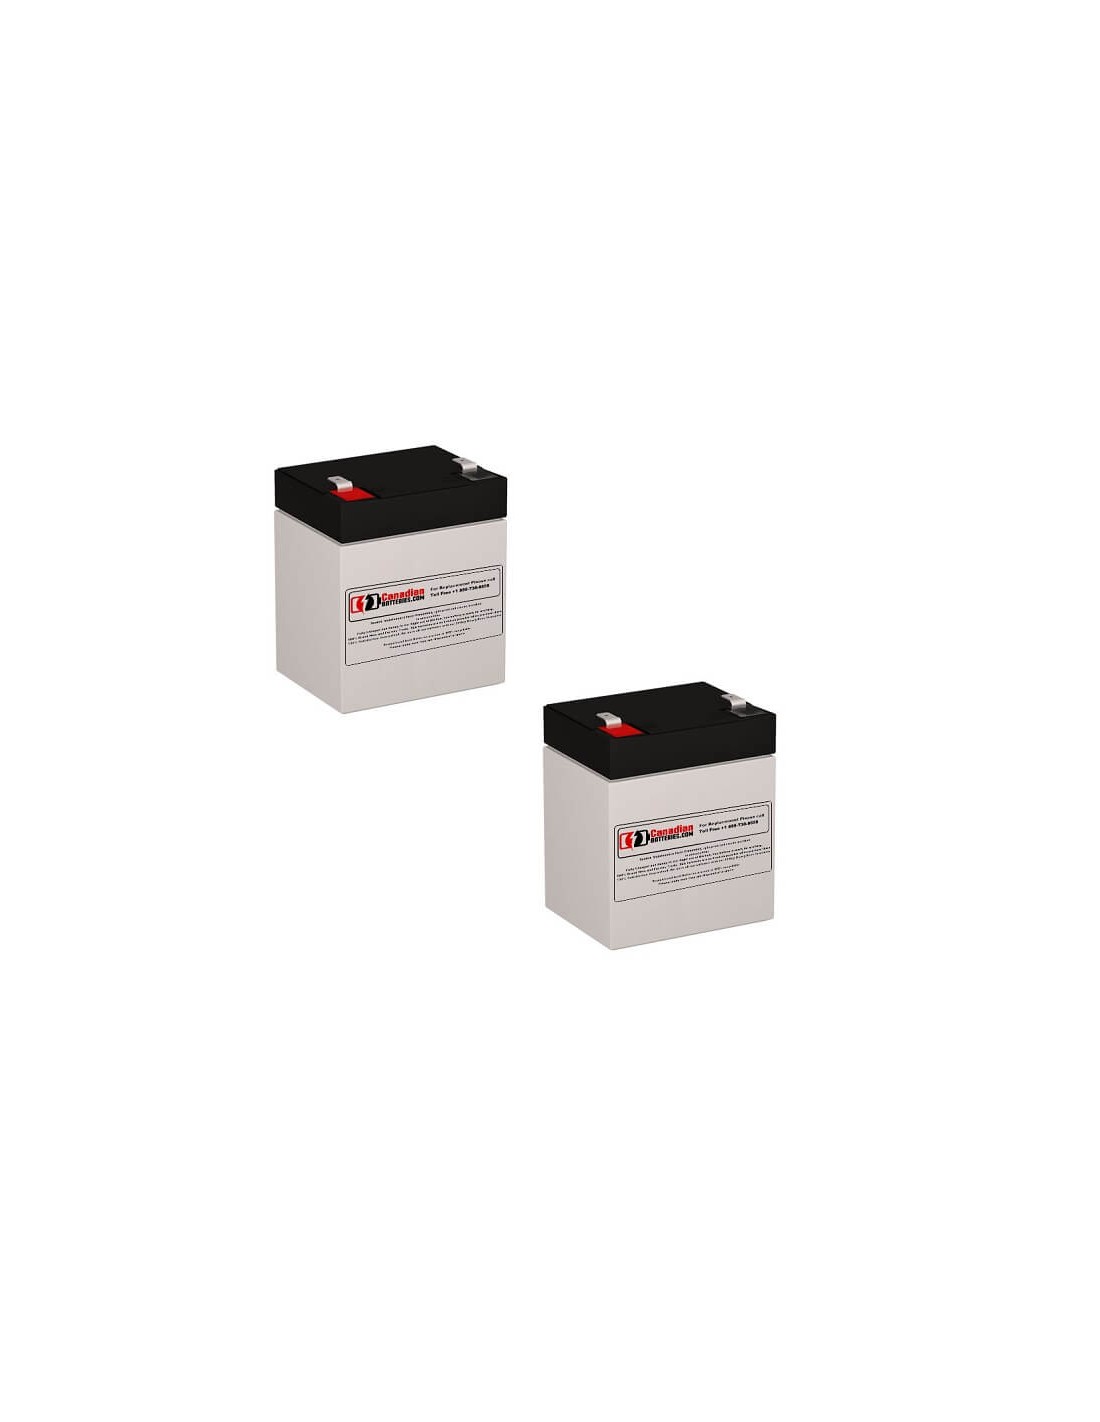 Batteries for Belkin F6c1100-unv UPS, 2 x 12V, 5Ah - 60Wh